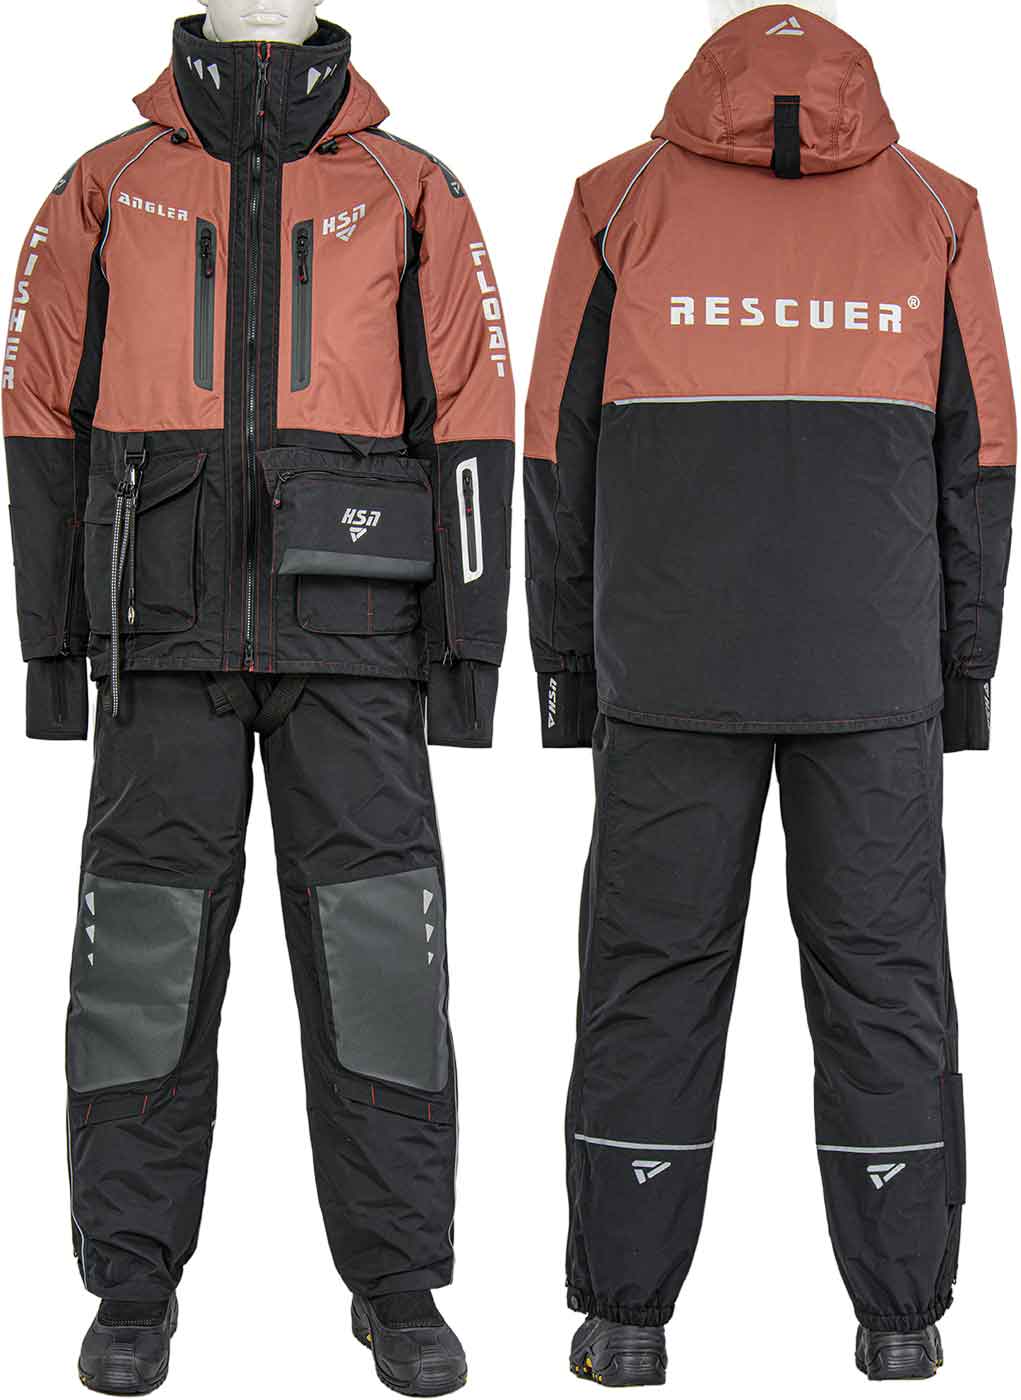 Зимний костюм-поплавок «Рескью 6 (Rescuer VI)» Махагон – купить по ценепроизводителя с доставкой по России